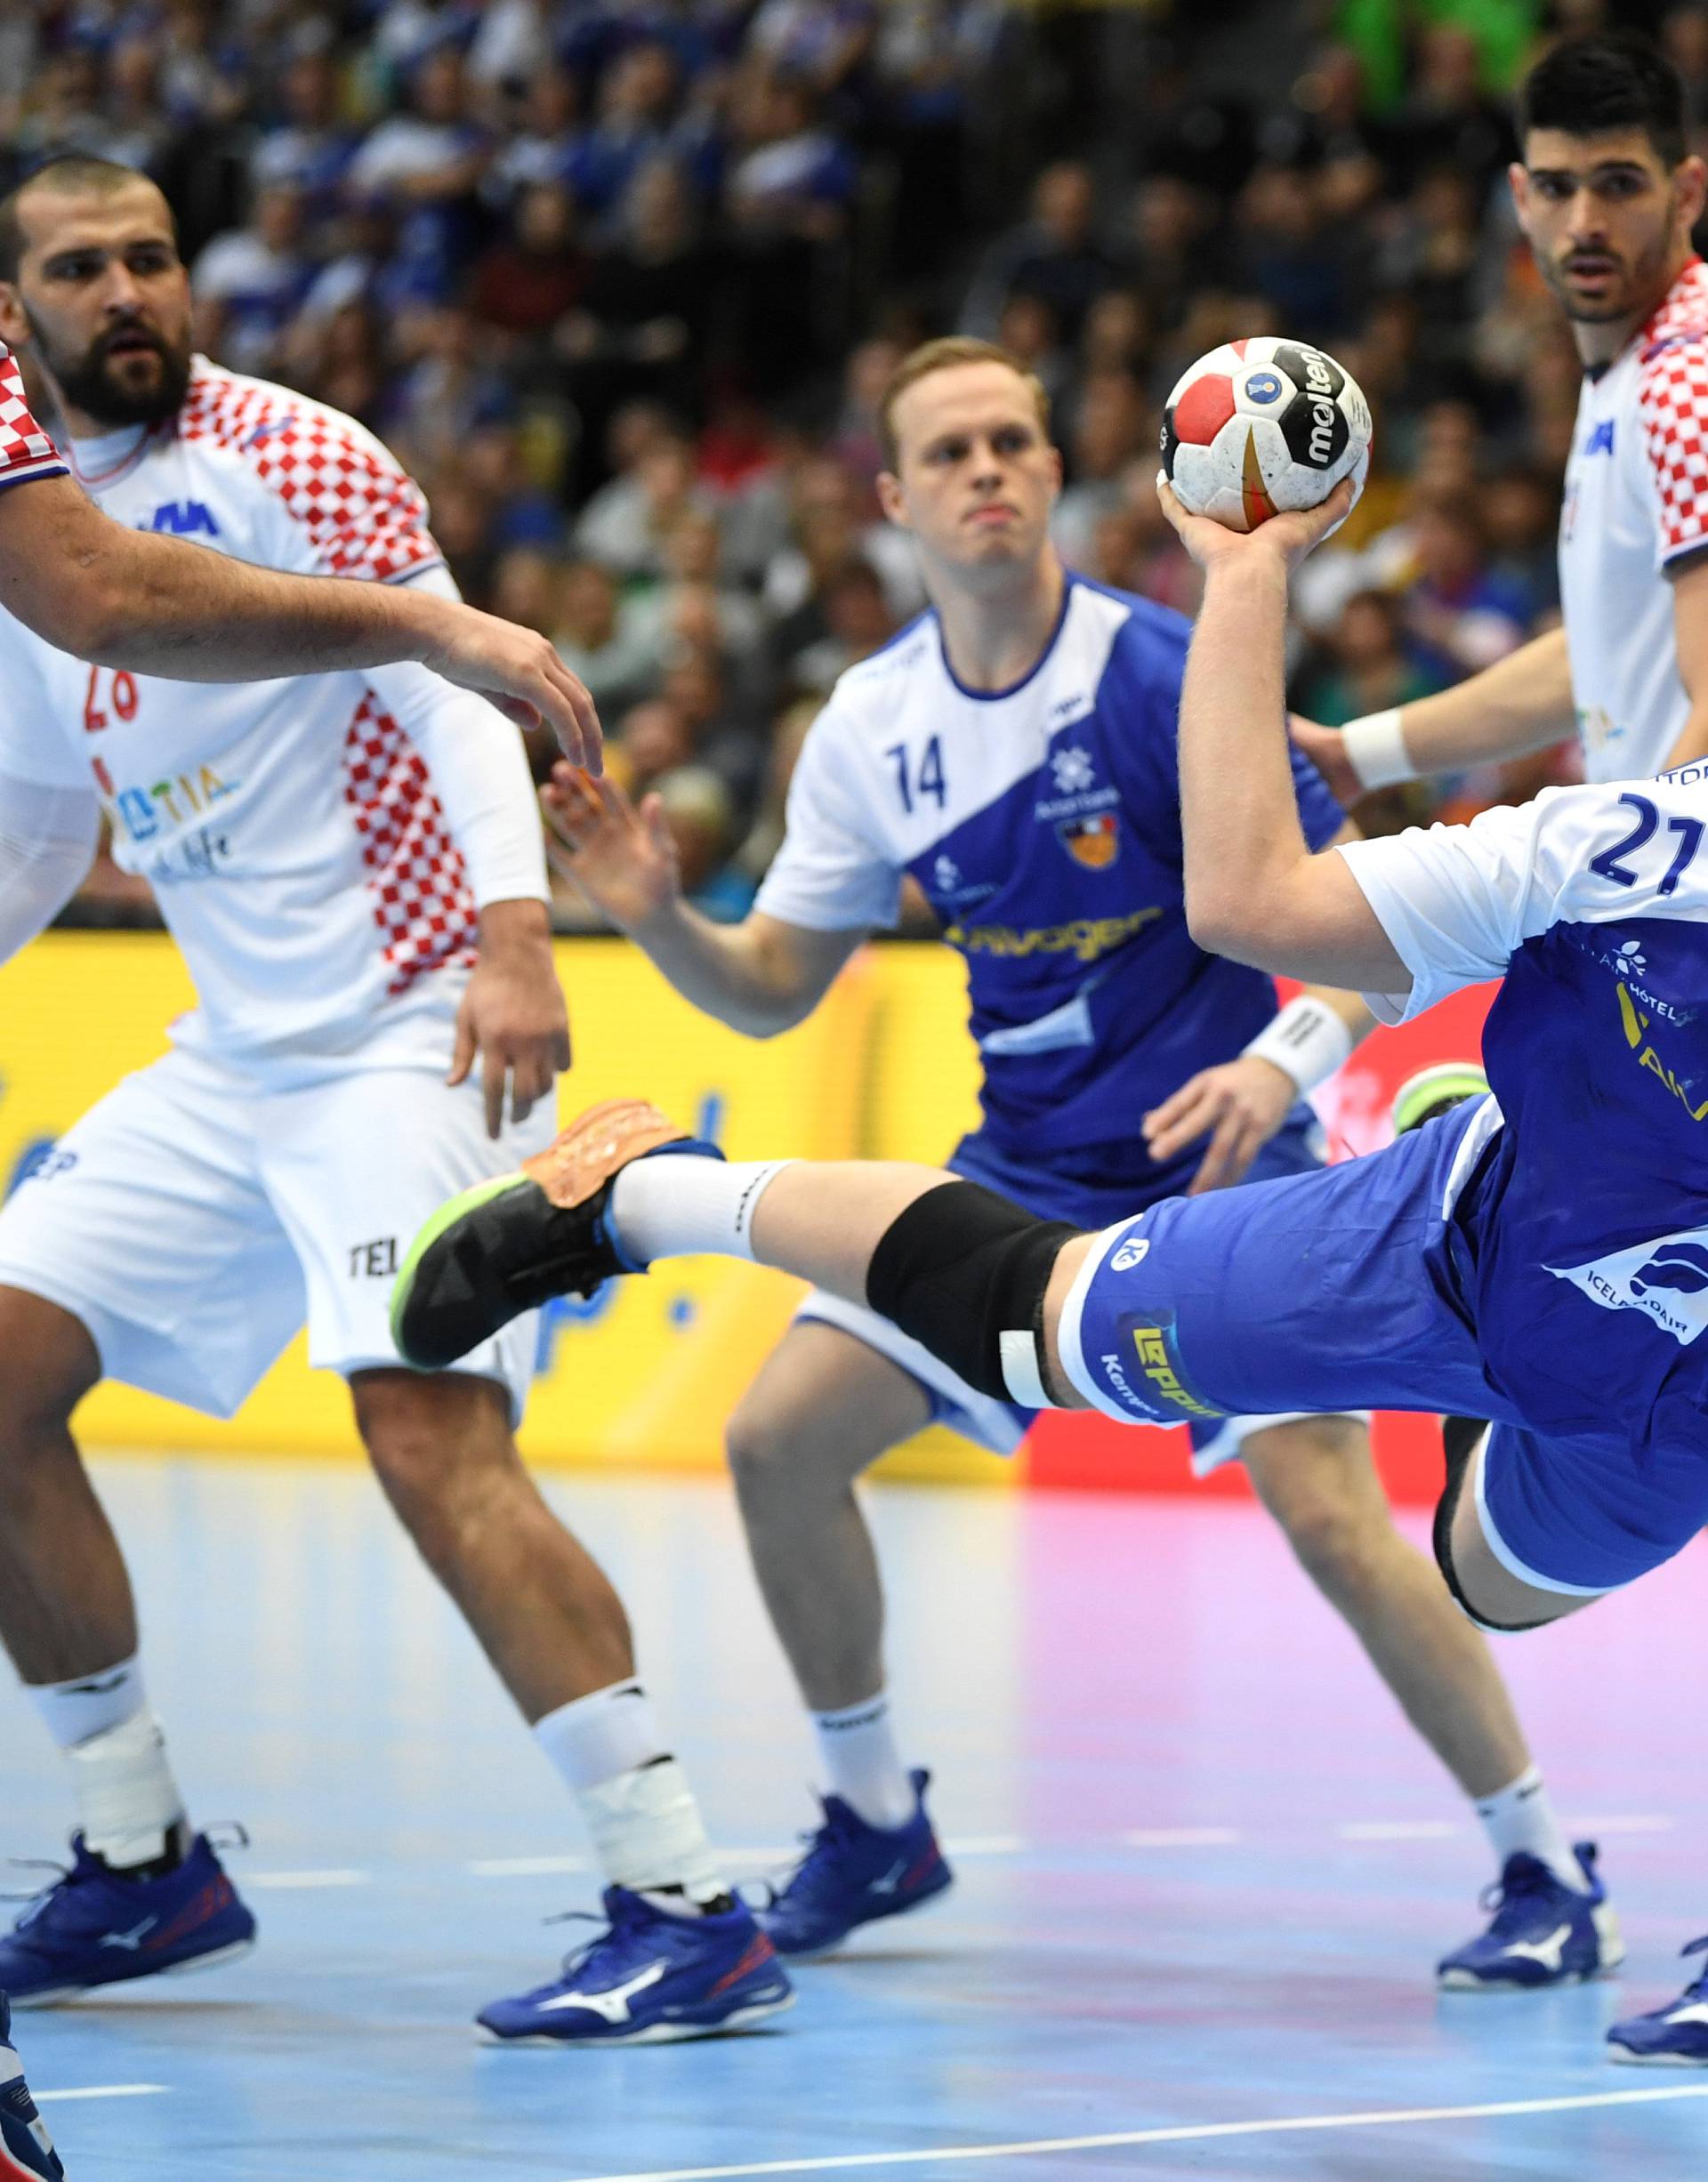 IHF Handball World Championship - Germany & Denmark 2019 - Group B - Iceland v Croatia